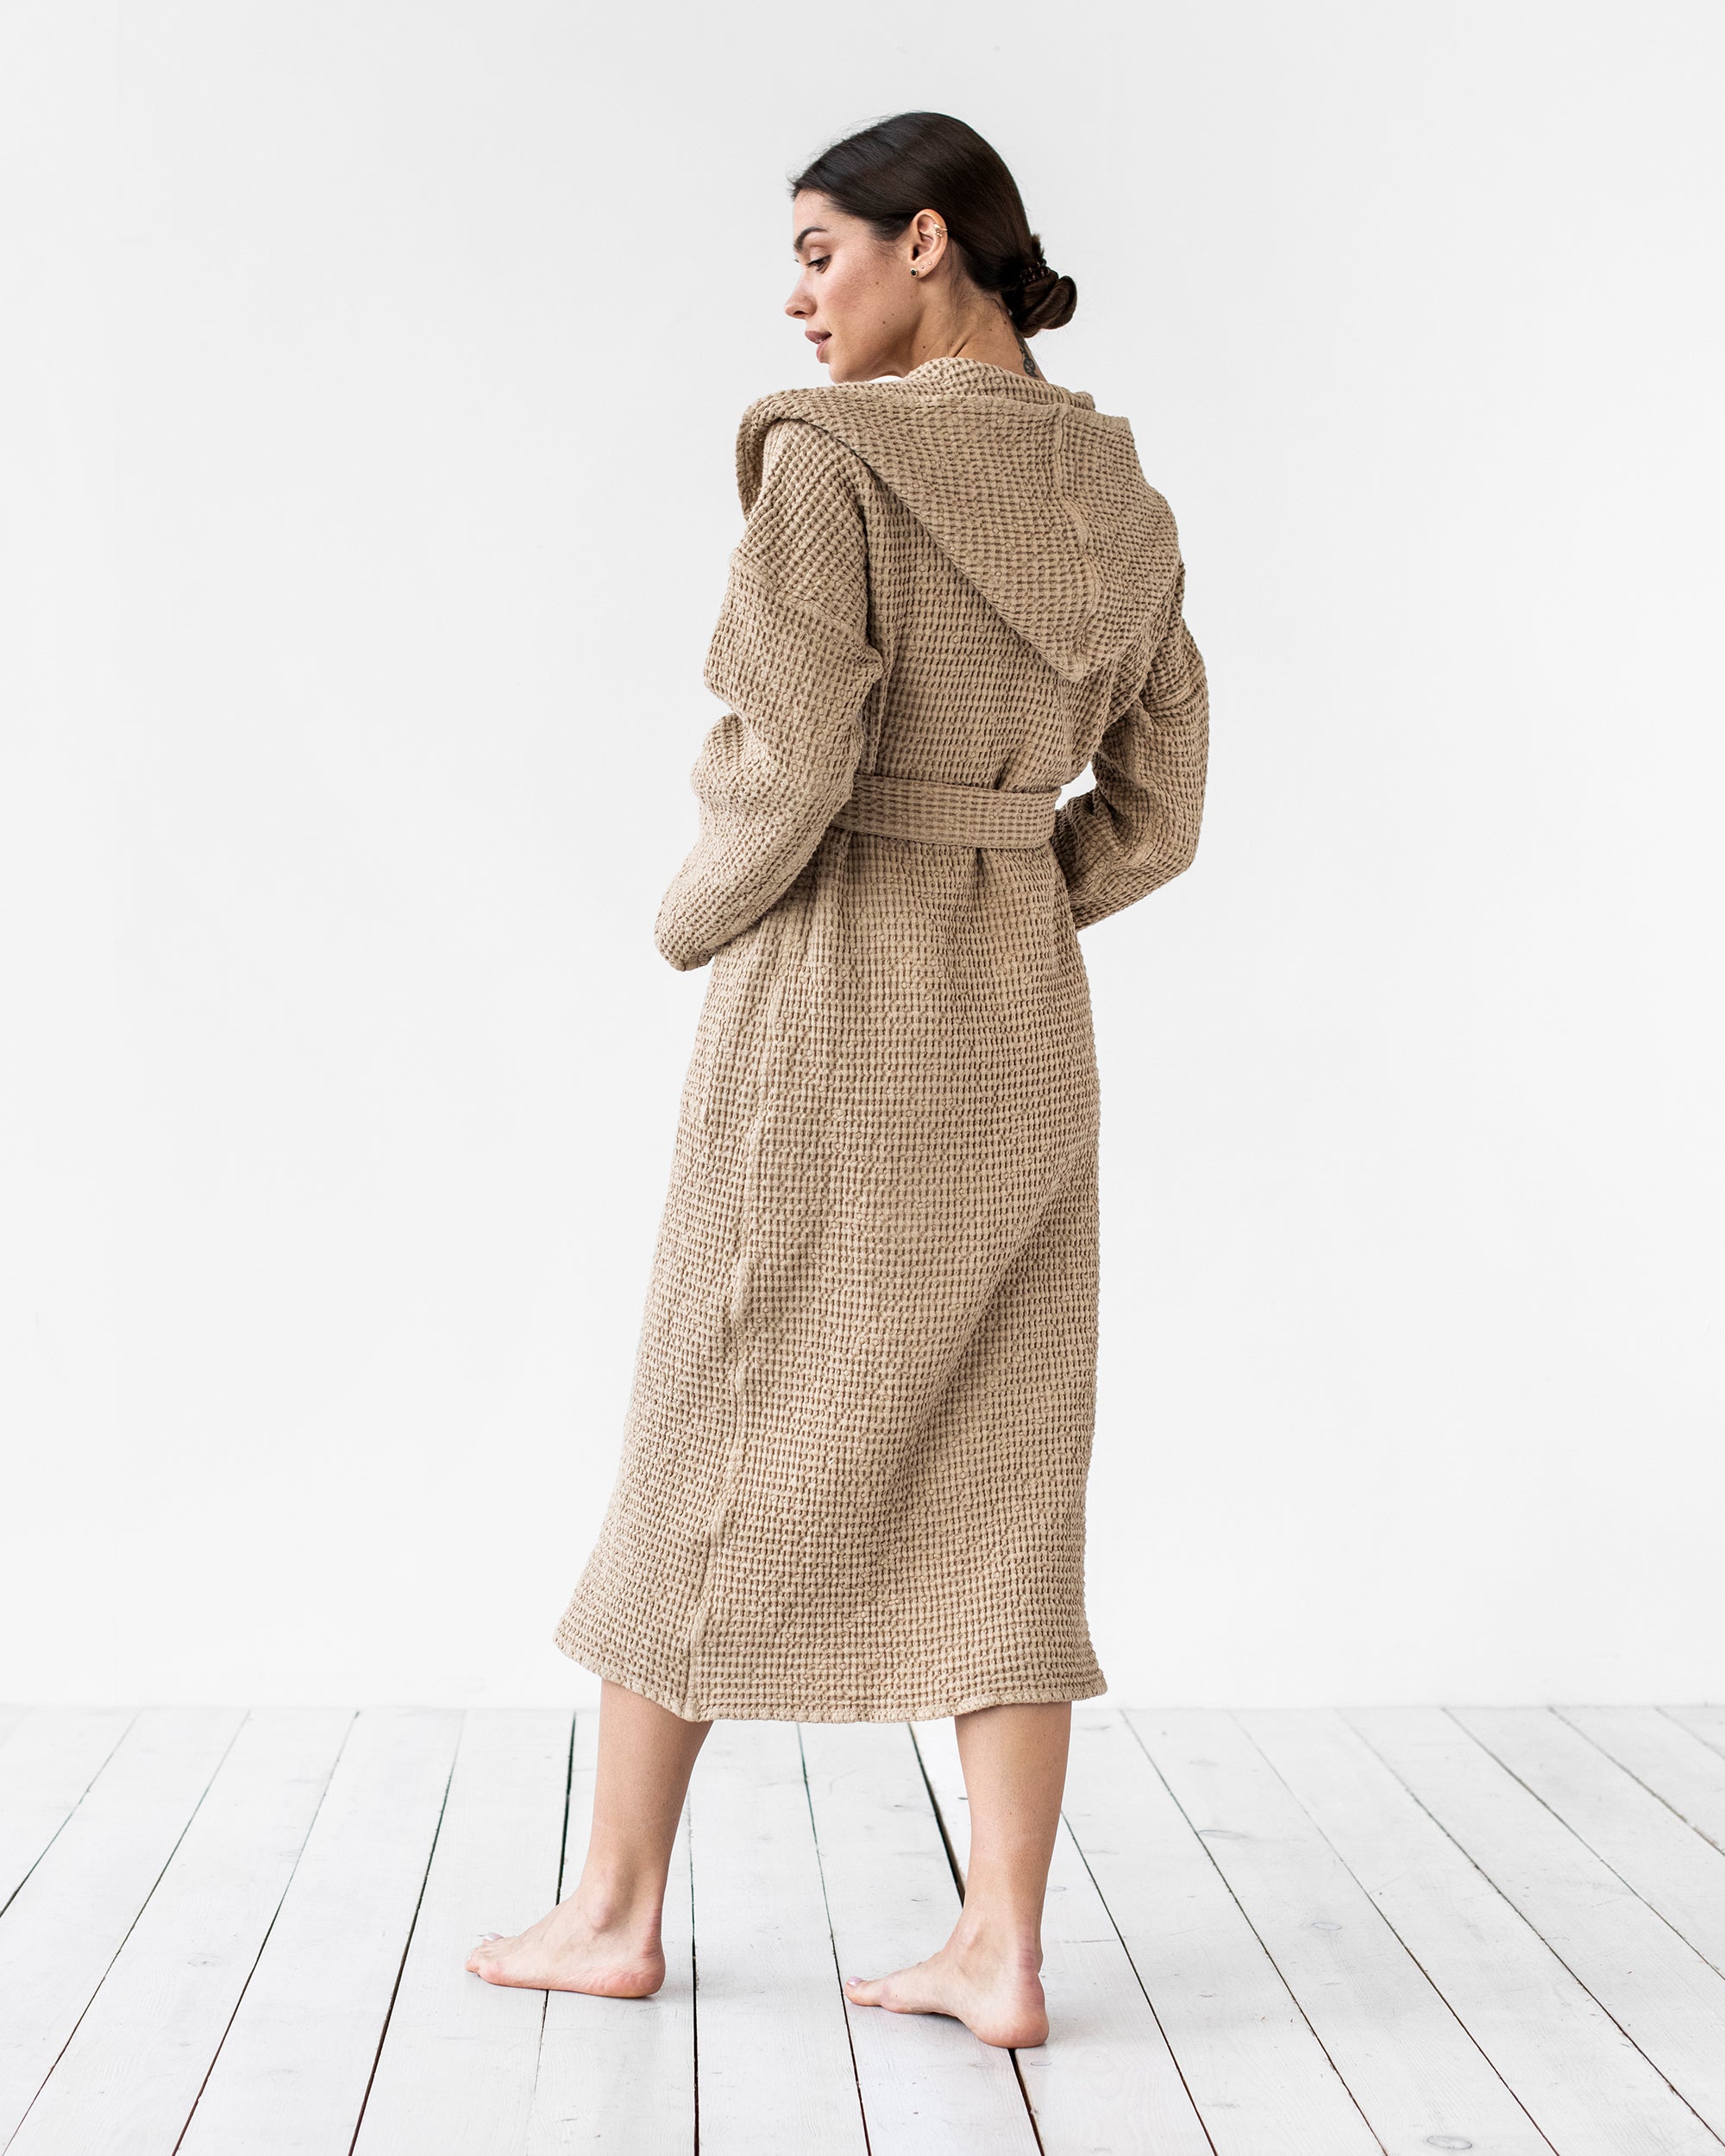 Women's Linen Robe in Beige | MagicLinen